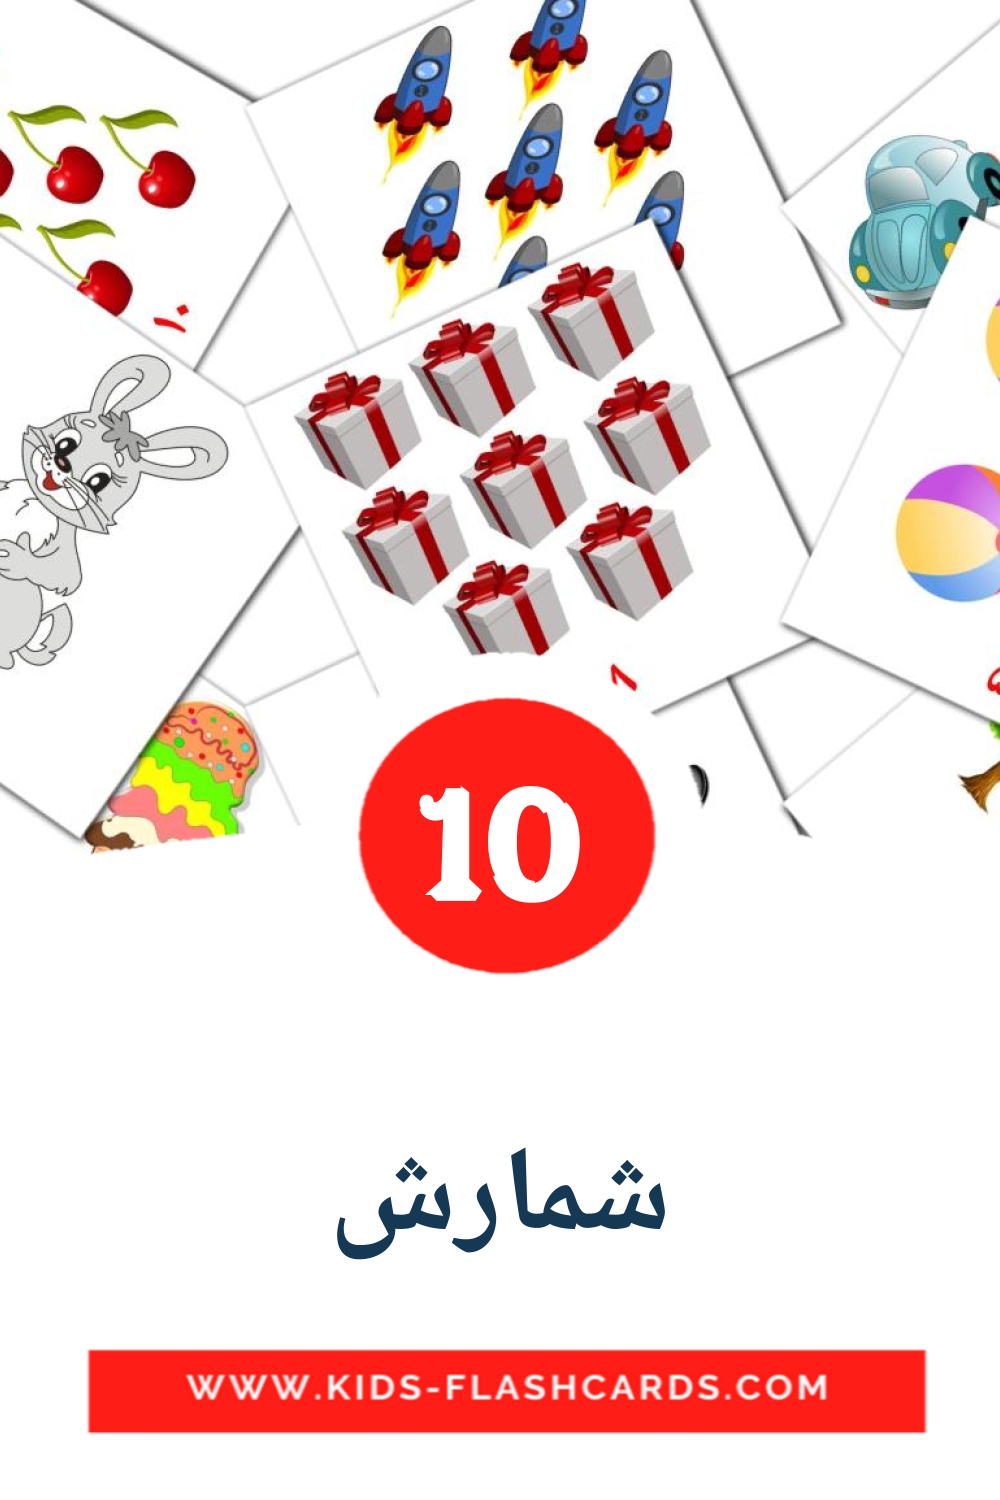 10 cartes illustrées de شمارش pour la maternelle en persan